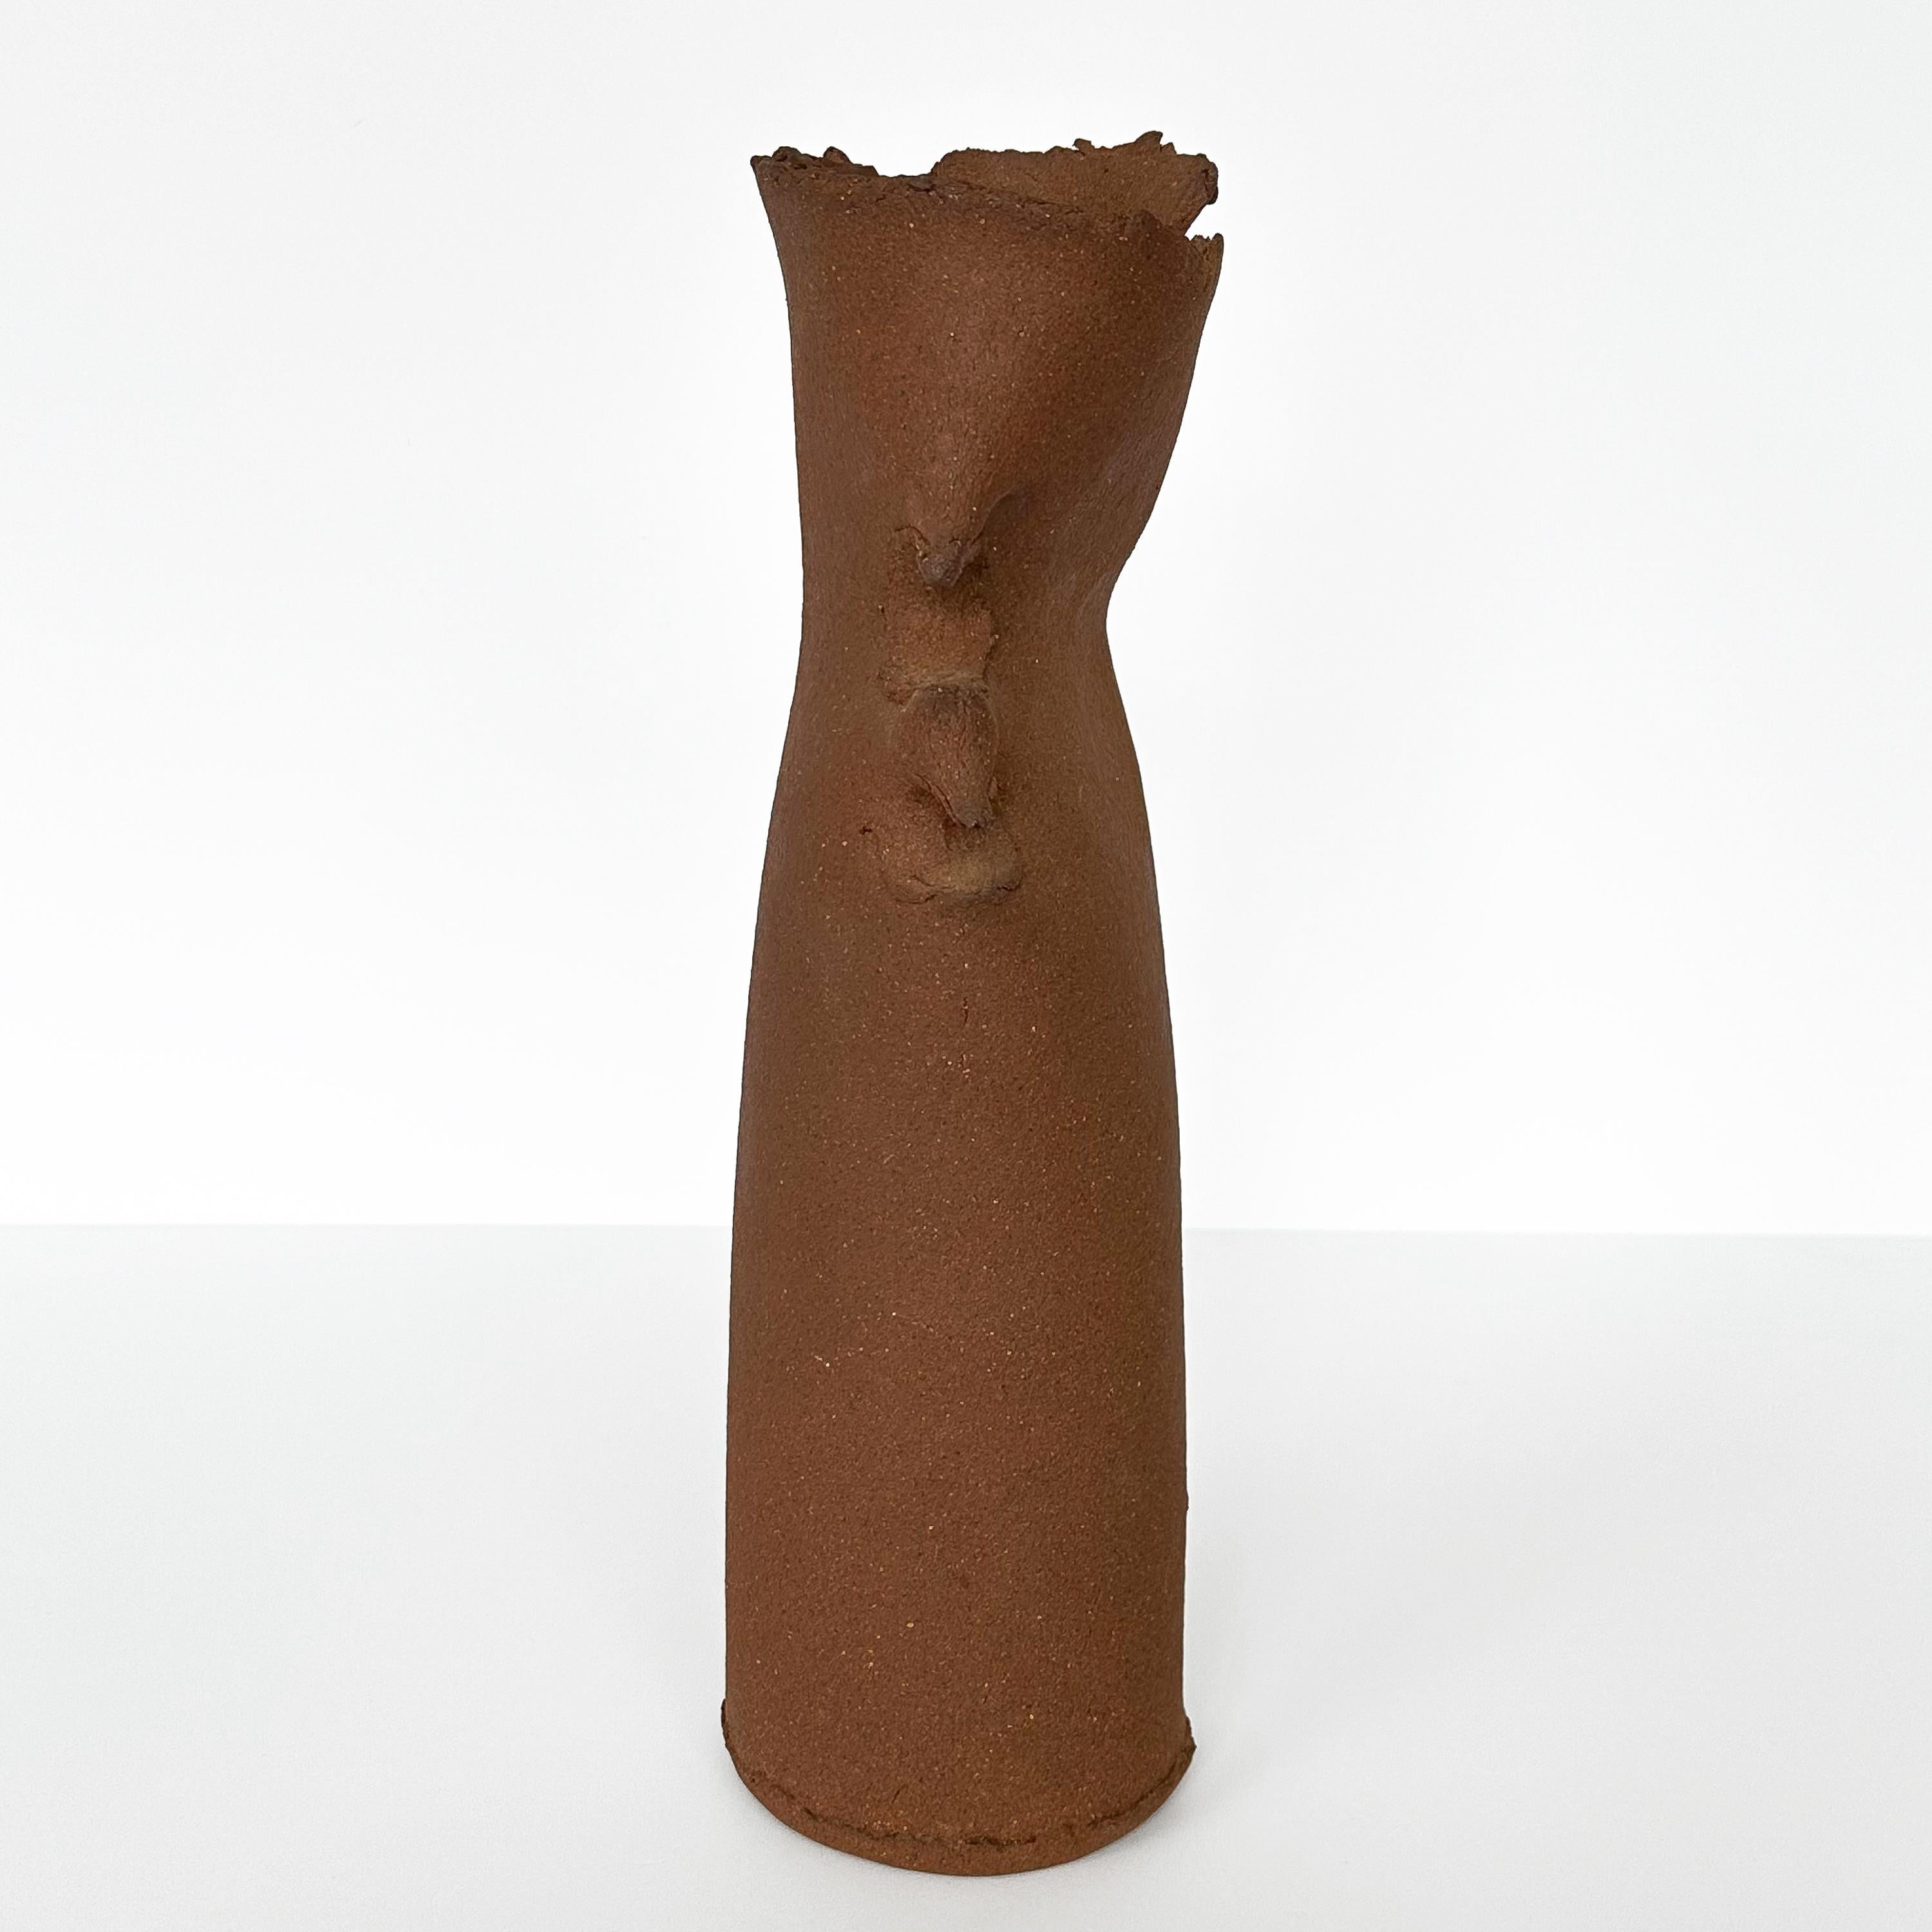 Charles Lakofsky Unglazed Stoneware Studio Pottery Vase 1